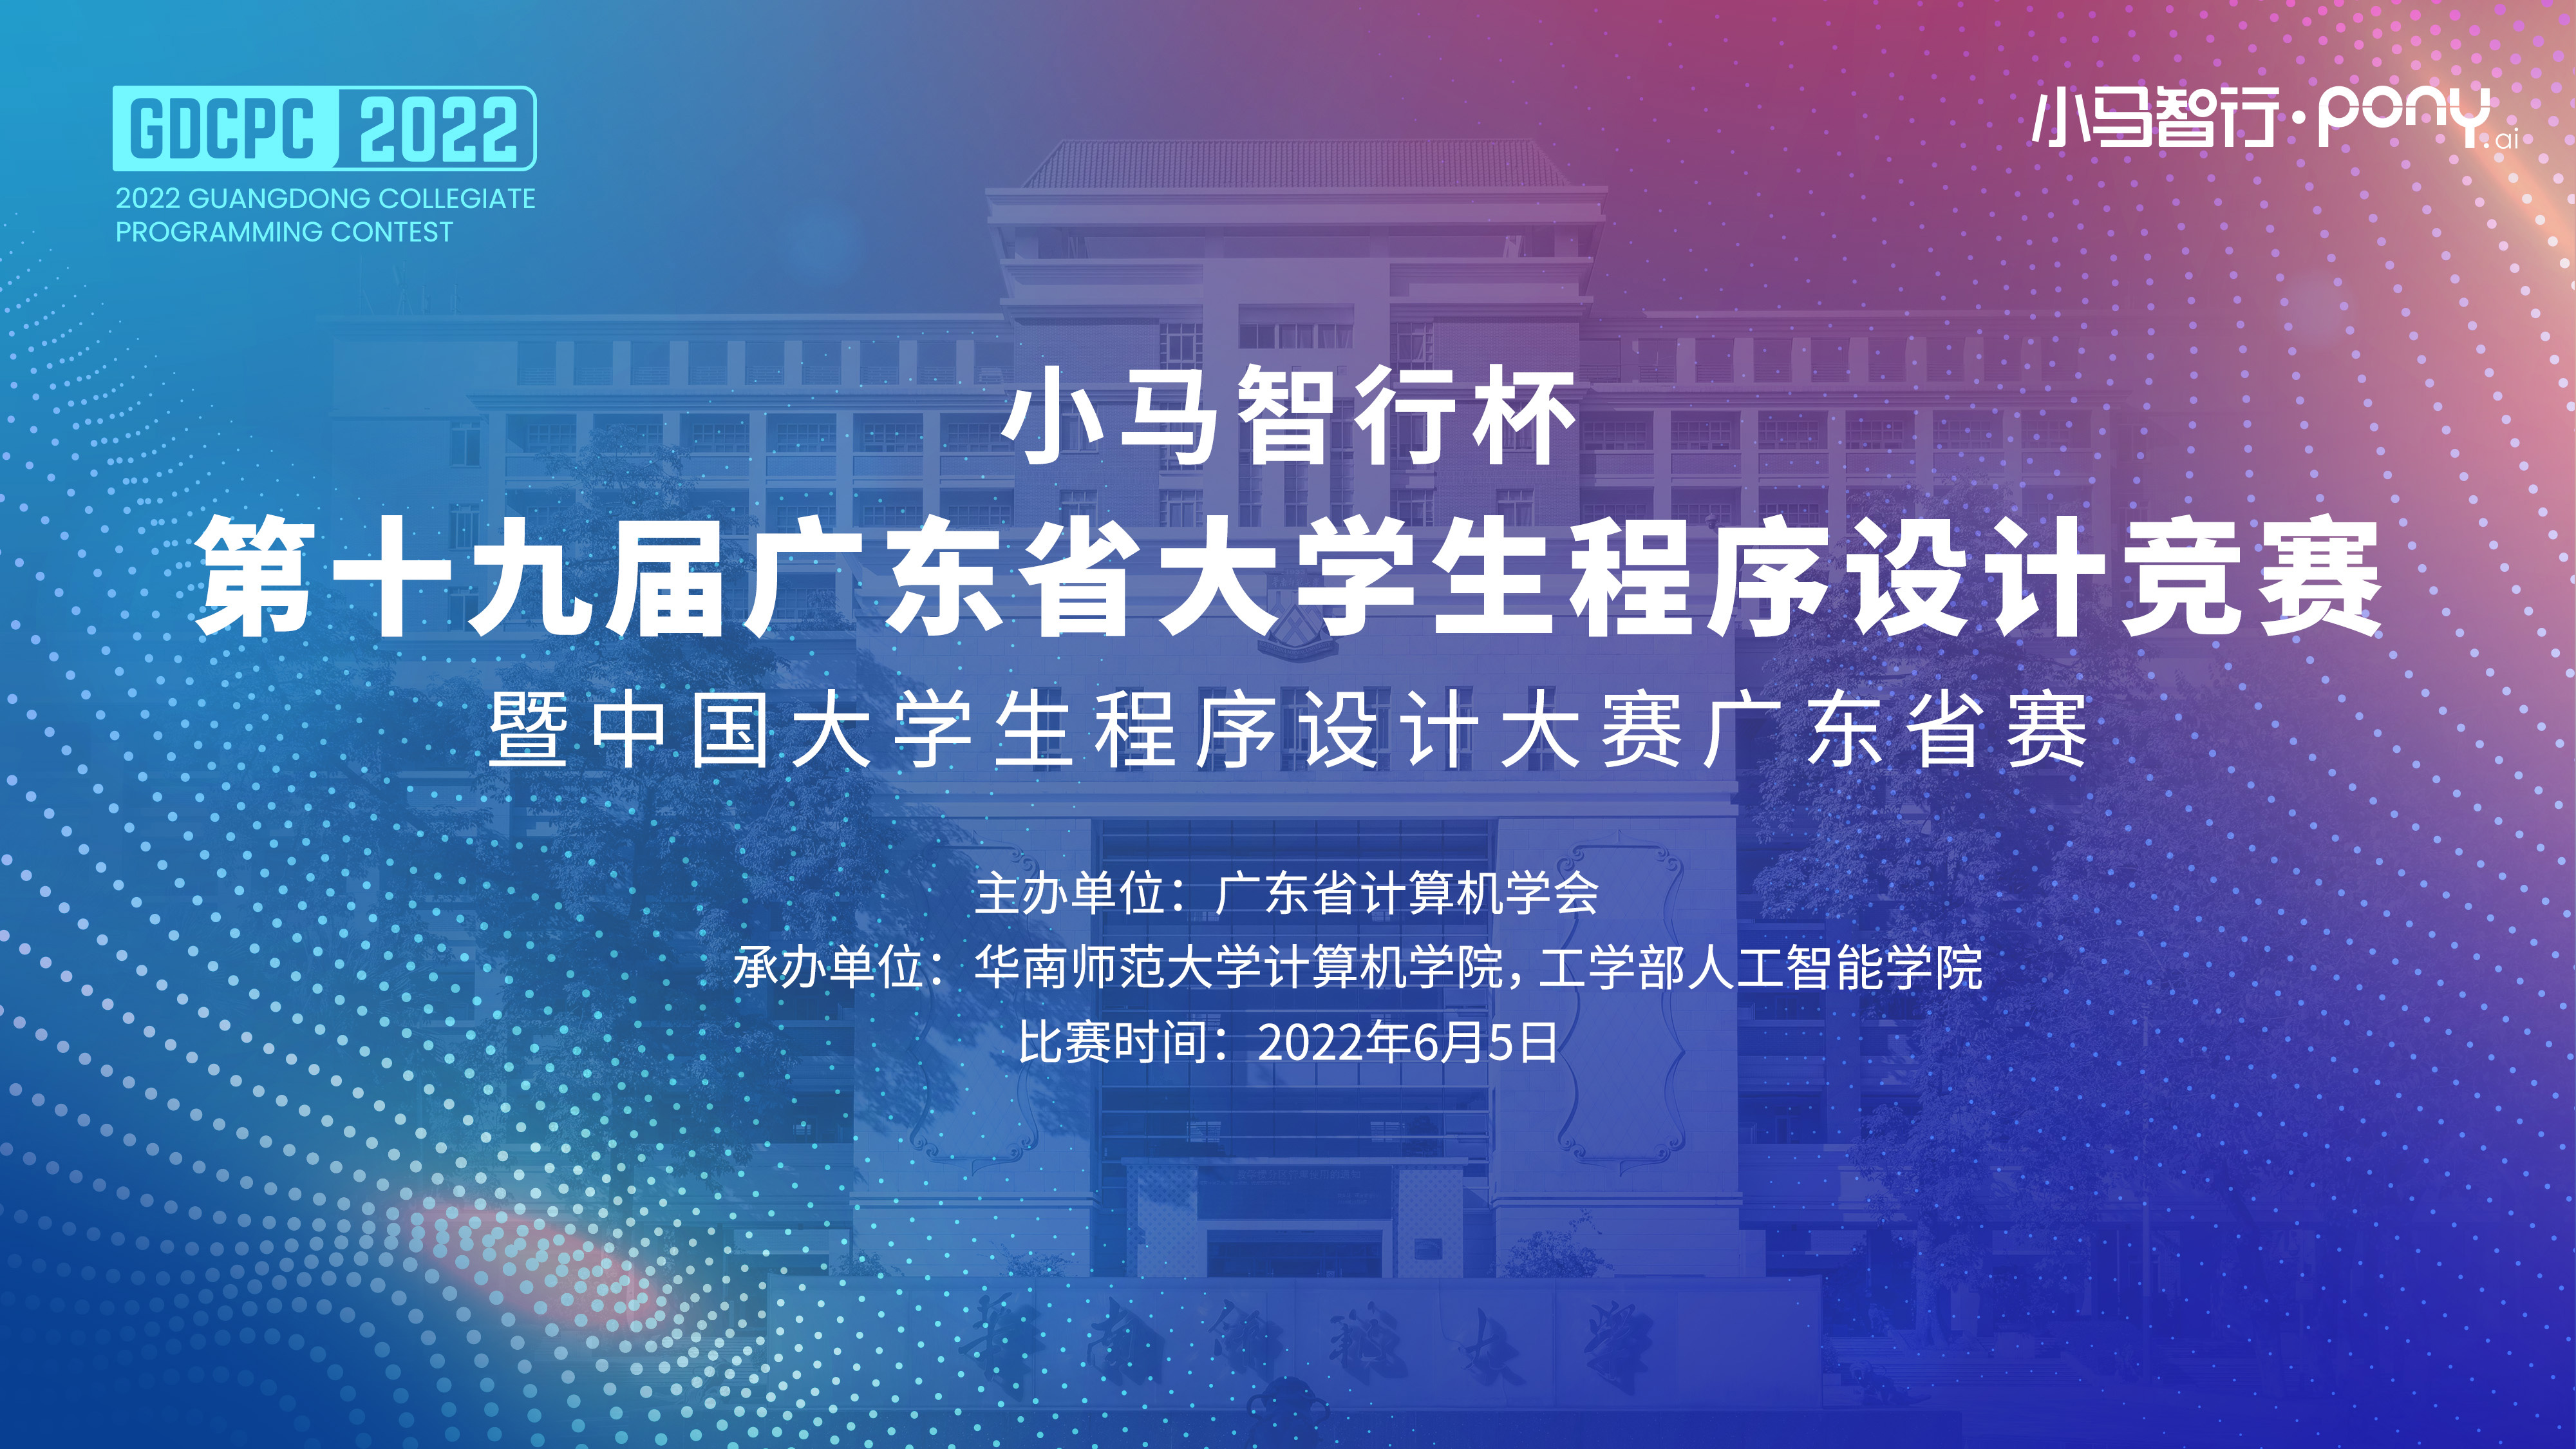 202206老金沙9170登录和工学部人工智能学院承办第十九届广东省大学生程序设计竞赛2.jpg